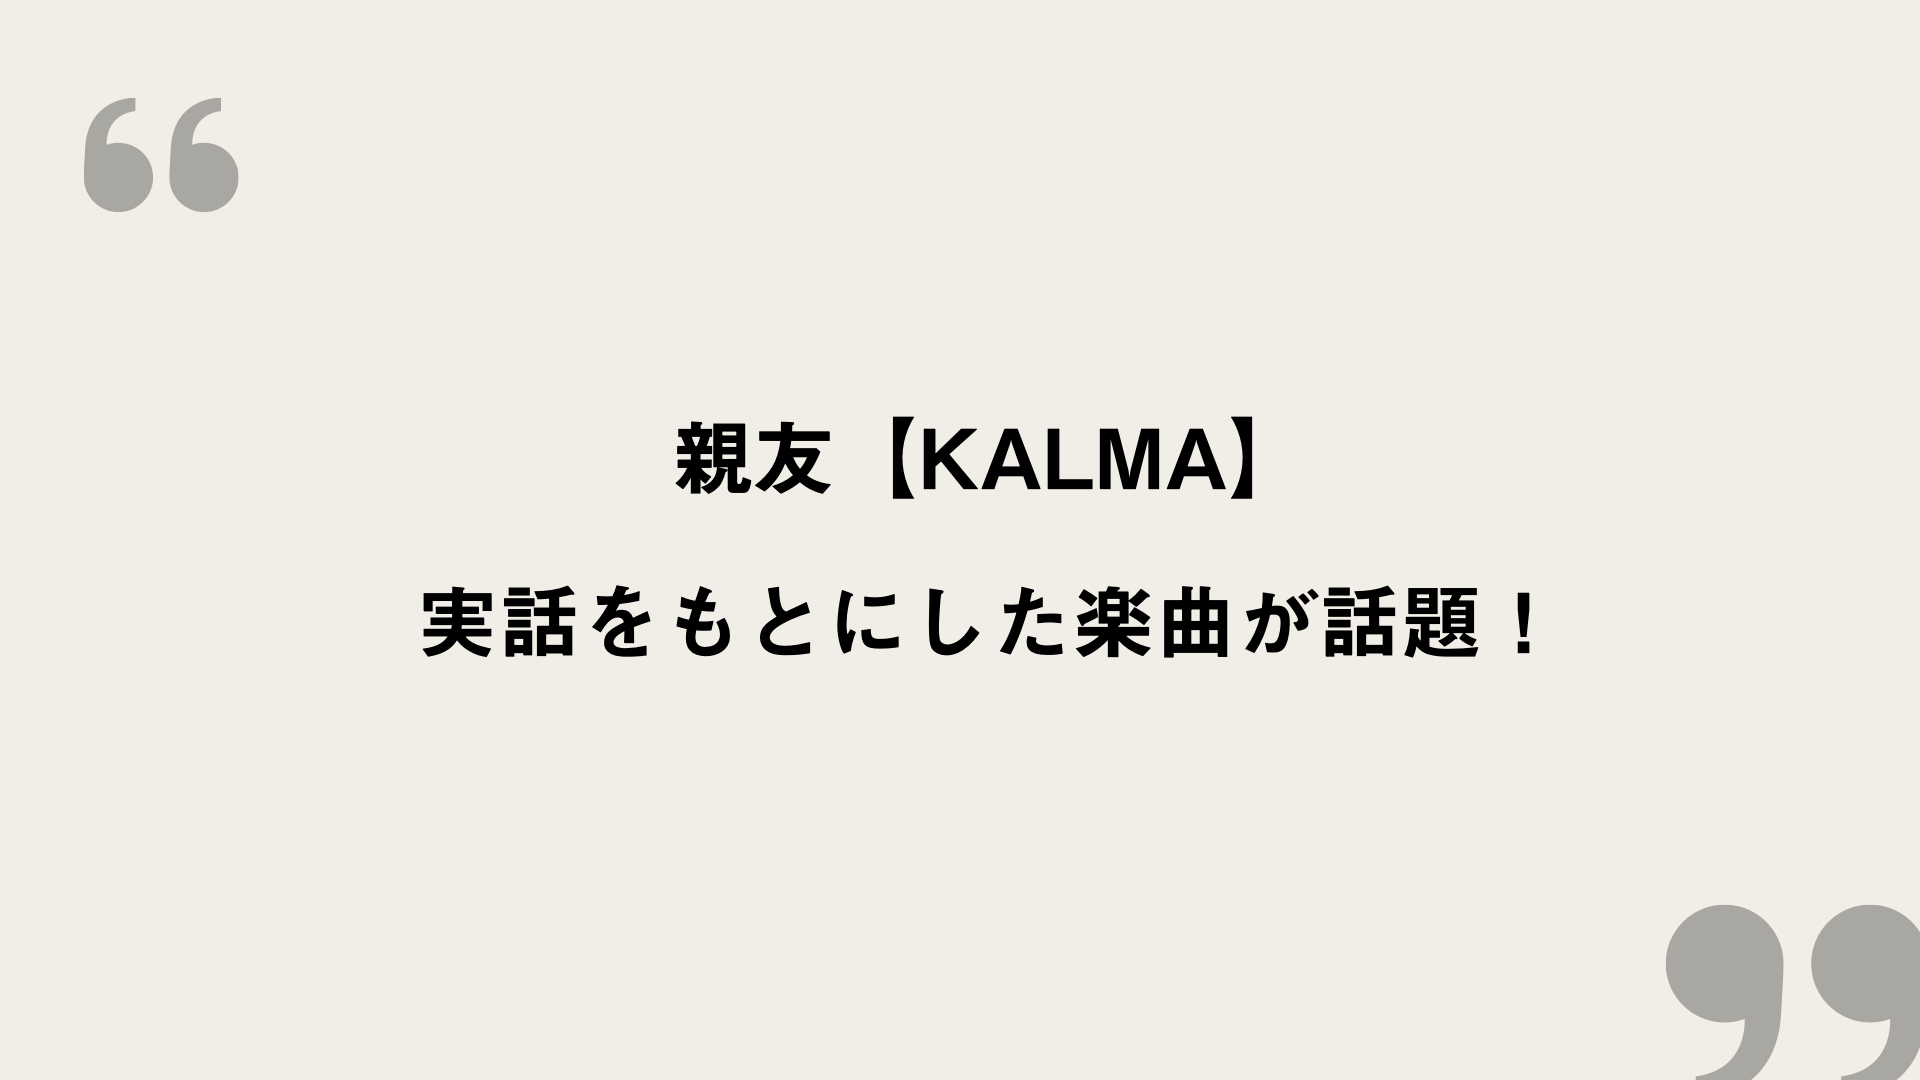 親友 Kalma 歌詞の意味を考察 実話をもとにした楽曲が話題 Framu Media